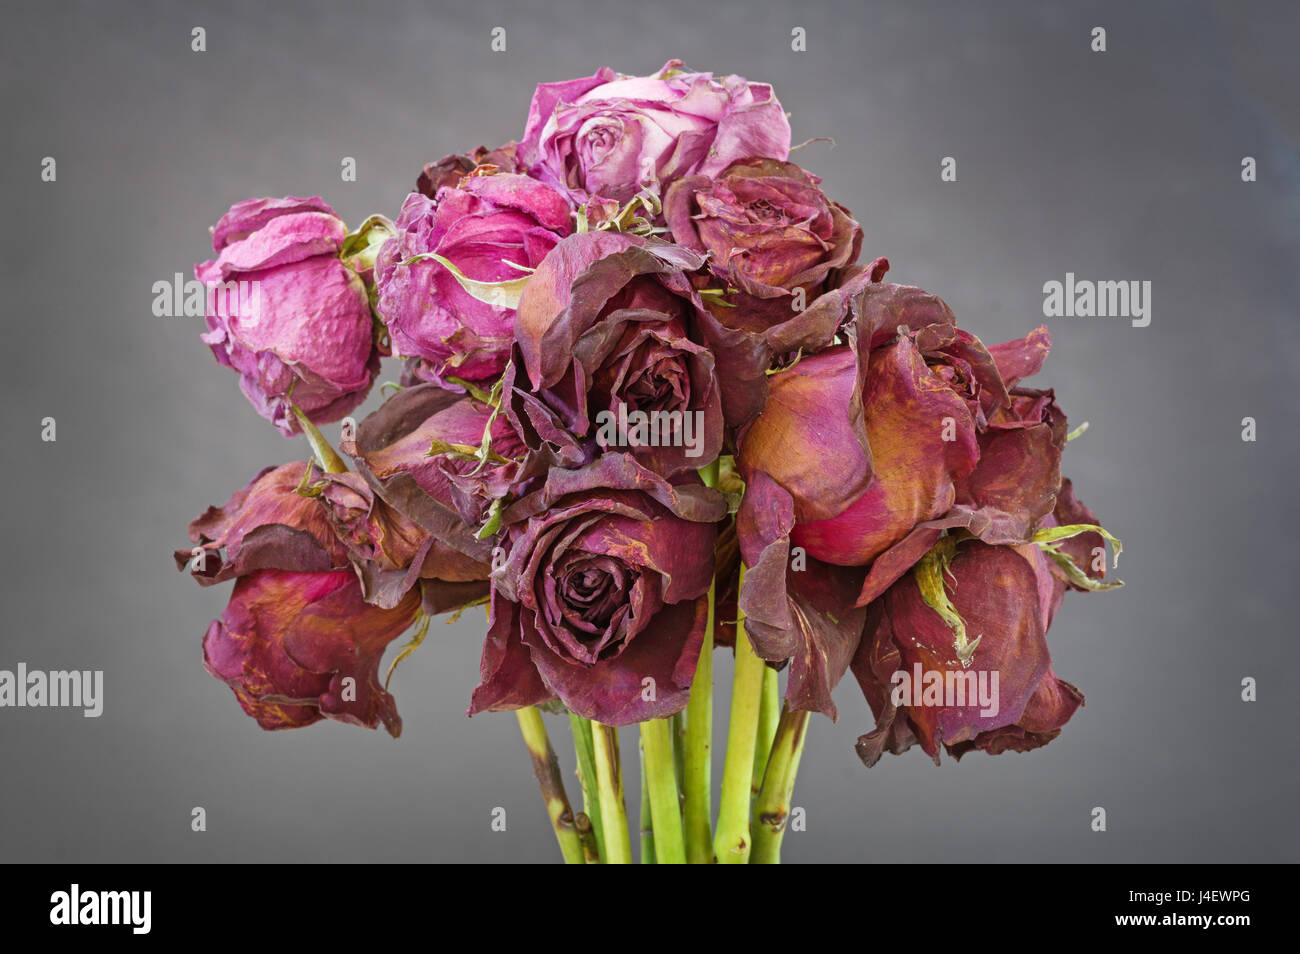 ein Bündel getrocknet von alten tot rote und rosa Rosen mit grauem Hintergrund Stockfoto